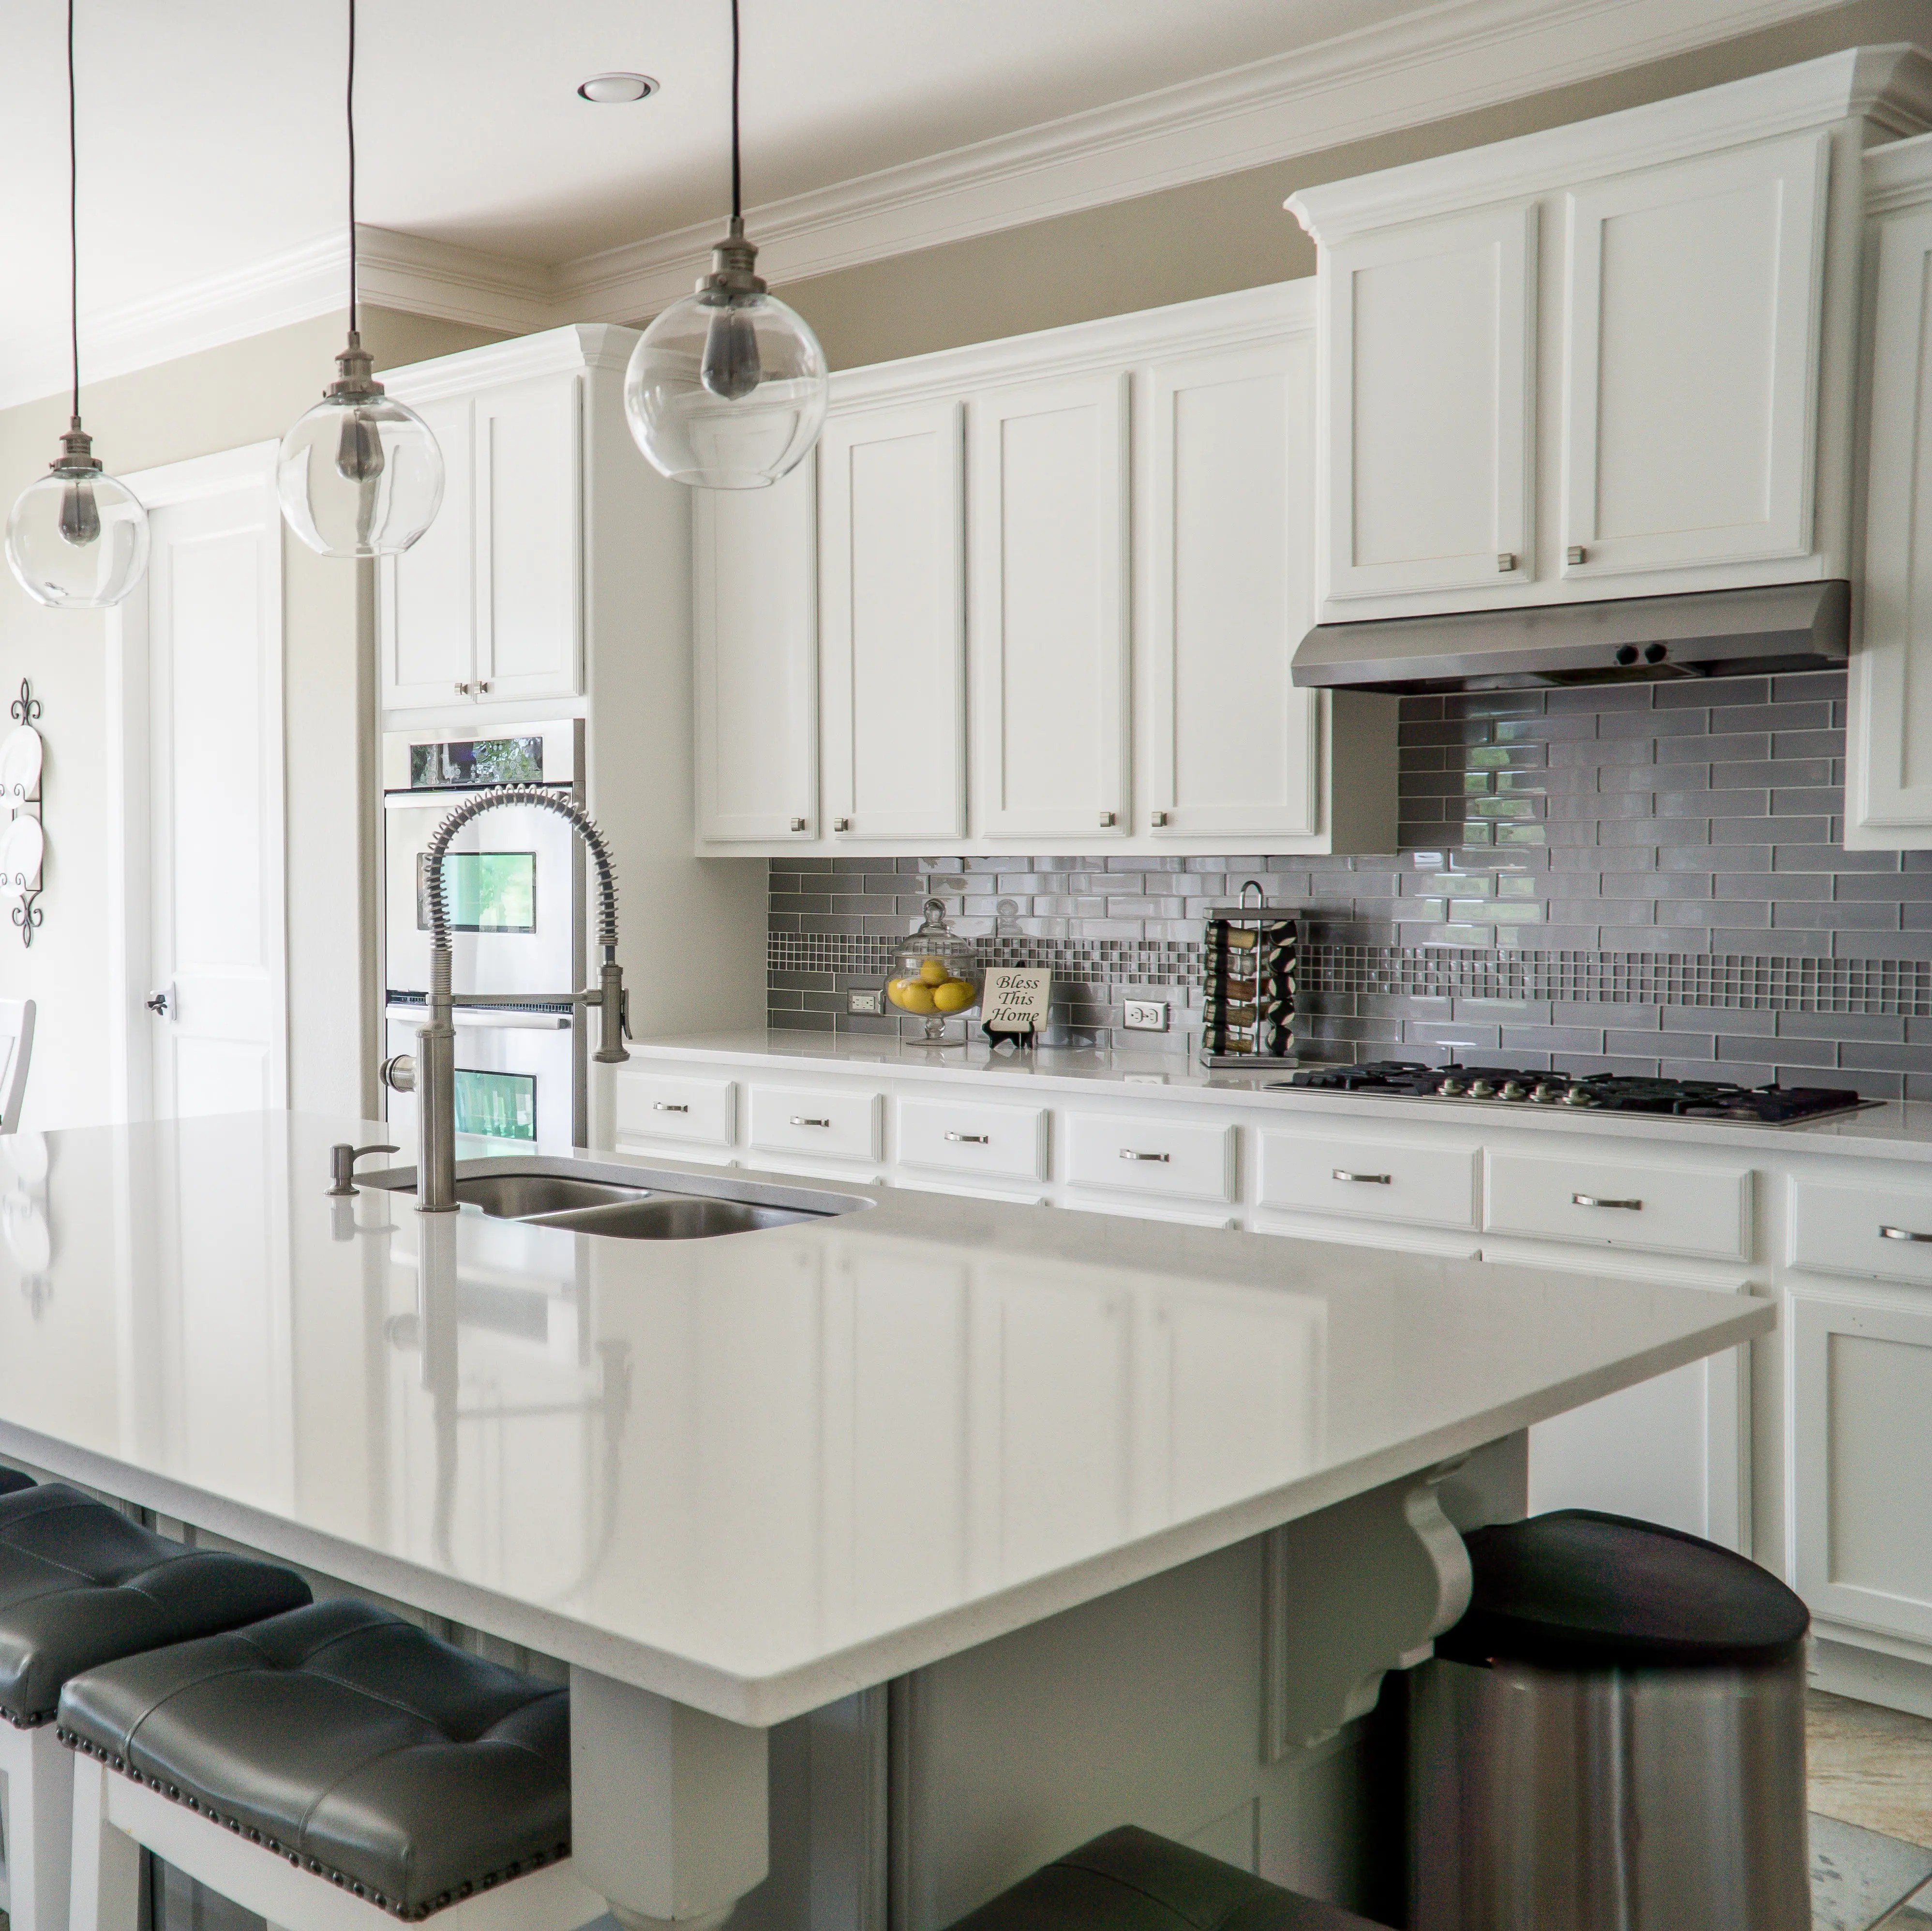 2019 personalizado tamanho do agitador de expresso estilo armário de cozinha, design interior do armário da cozinha.